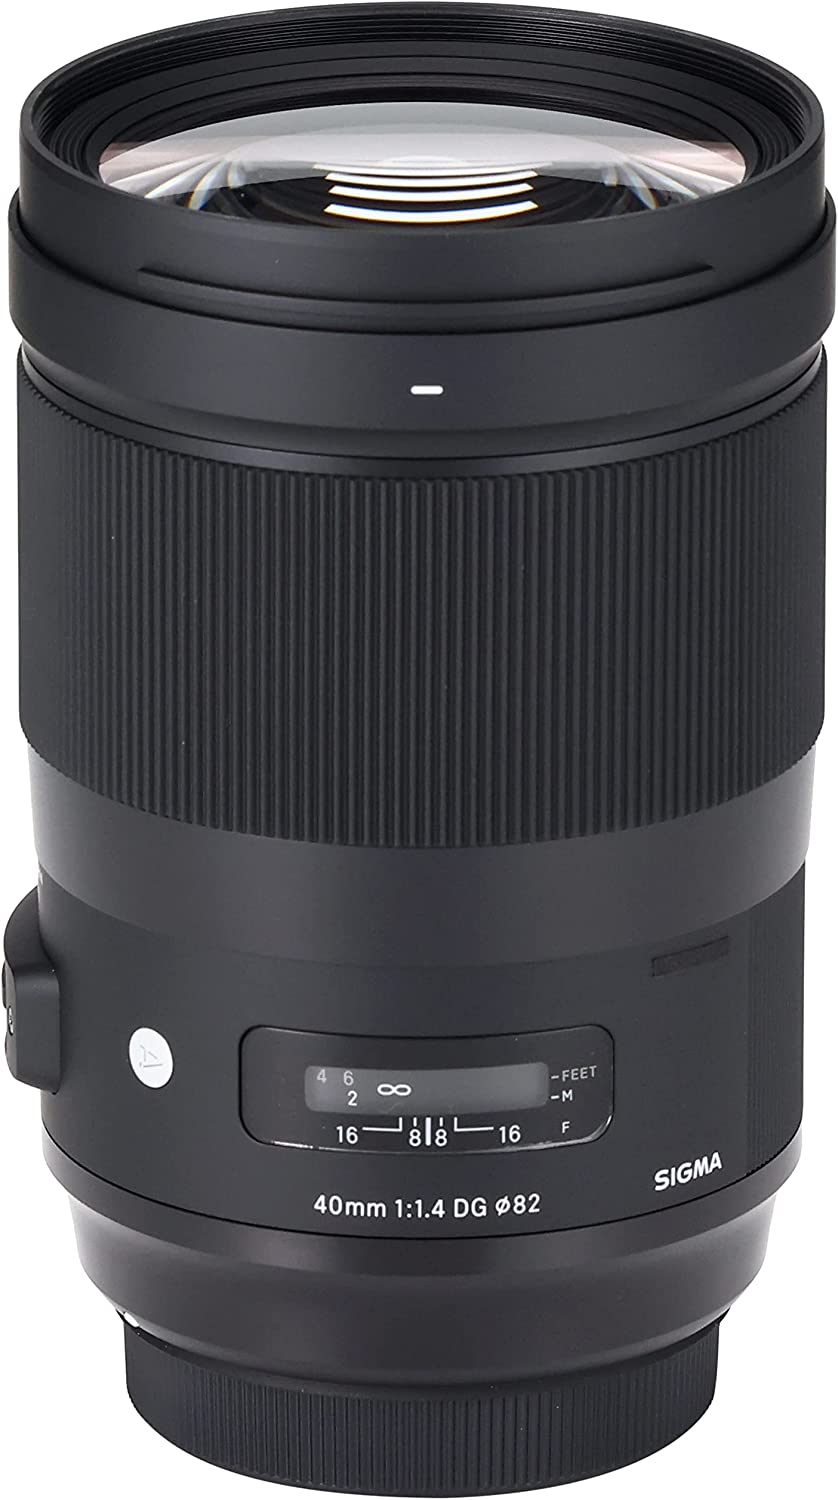 Sigma 40mm f/1.4 DG HSM Art Lens for Canon EF 332954 - 7PC Accessory Bundle